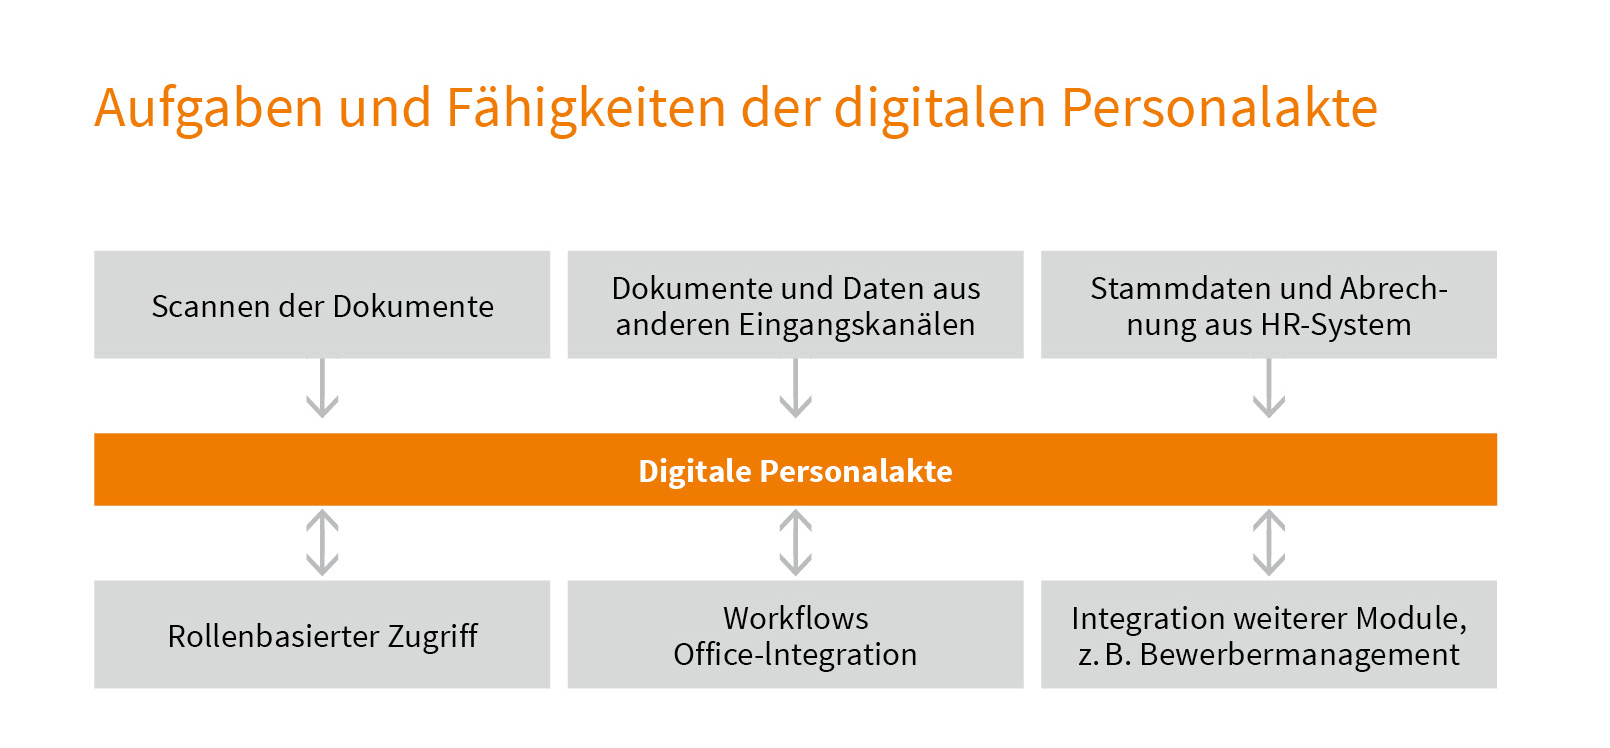 Aufgaben und Fähigkeiten der digitalen Personalakte. (Bild: TA Triumph-Adler GmbH)